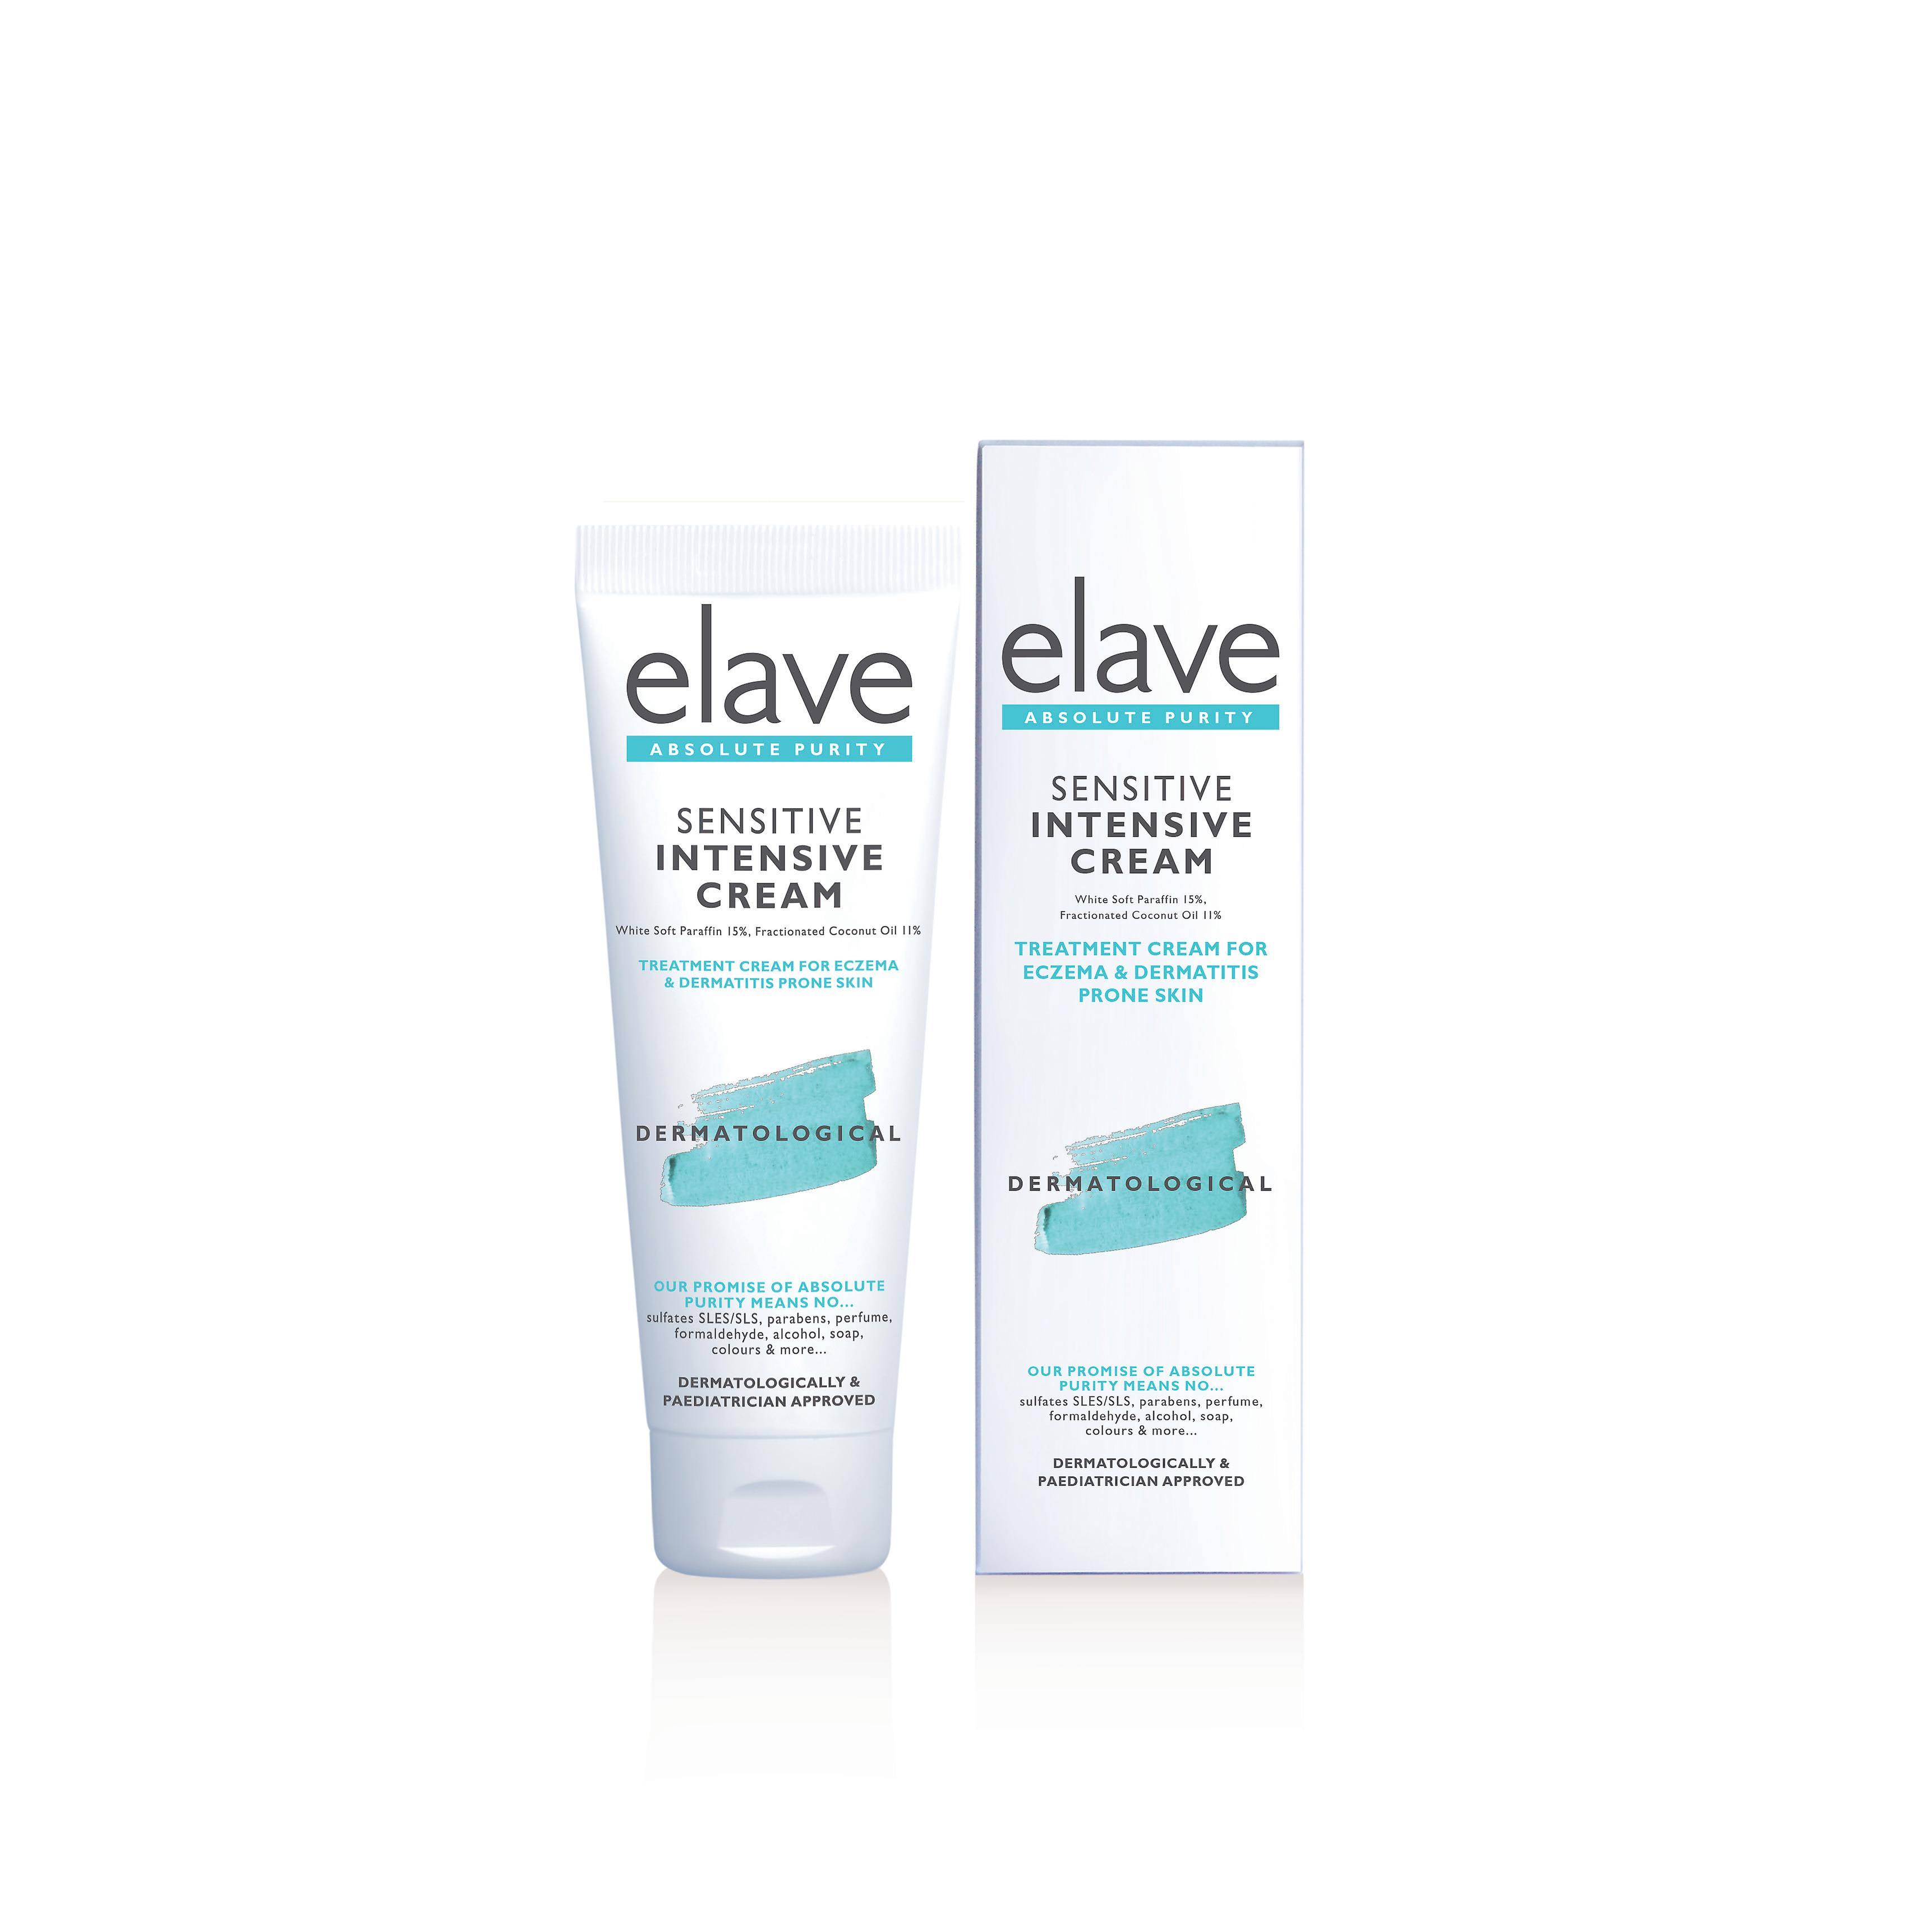 Elave Intensive Cream